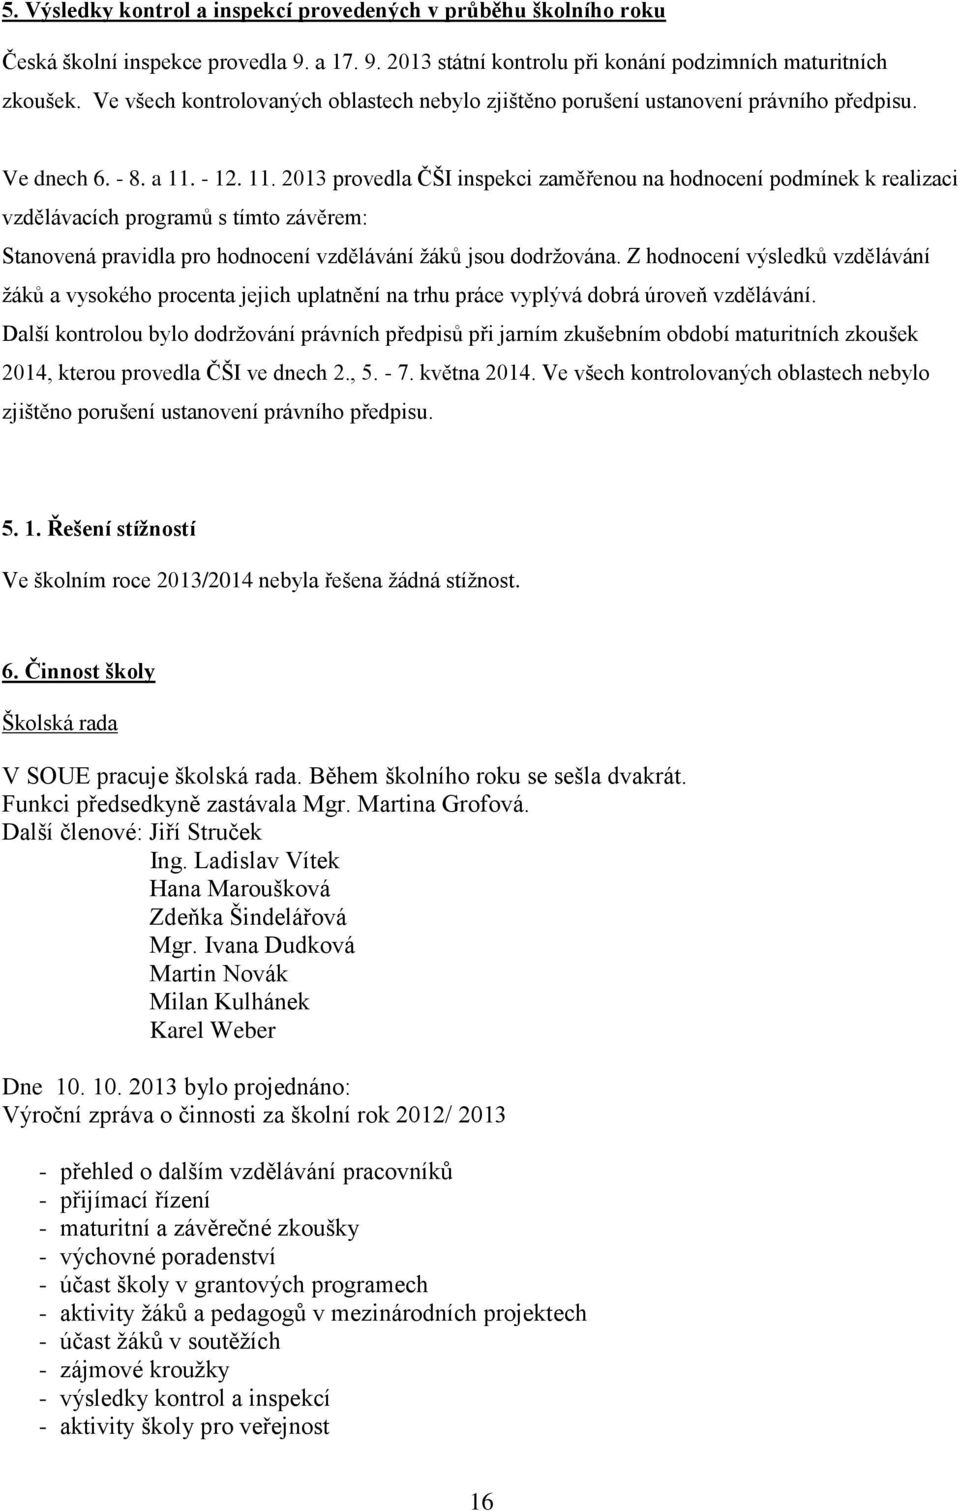 - 12. 11. 2013 provedla ČŠI inspekci zaměřenou na hodnocení podmínek k realizaci vzdělávacích programů s tímto závěrem: Stanovená pravidla pro hodnocení vzdělávání žáků jsou dodržována.